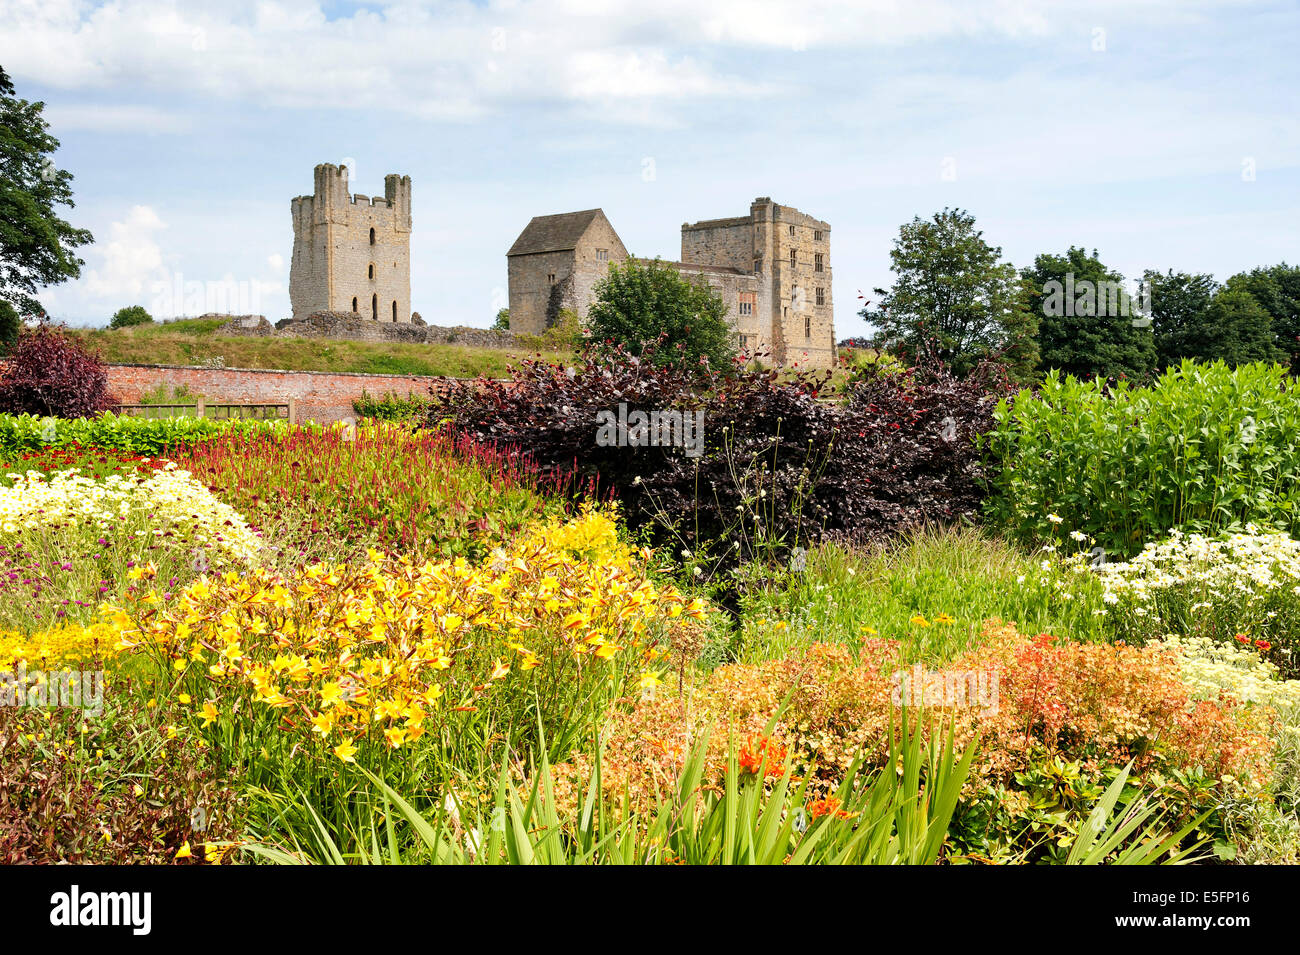 Helmsley castle from Helmsley walled garden Stock Photo